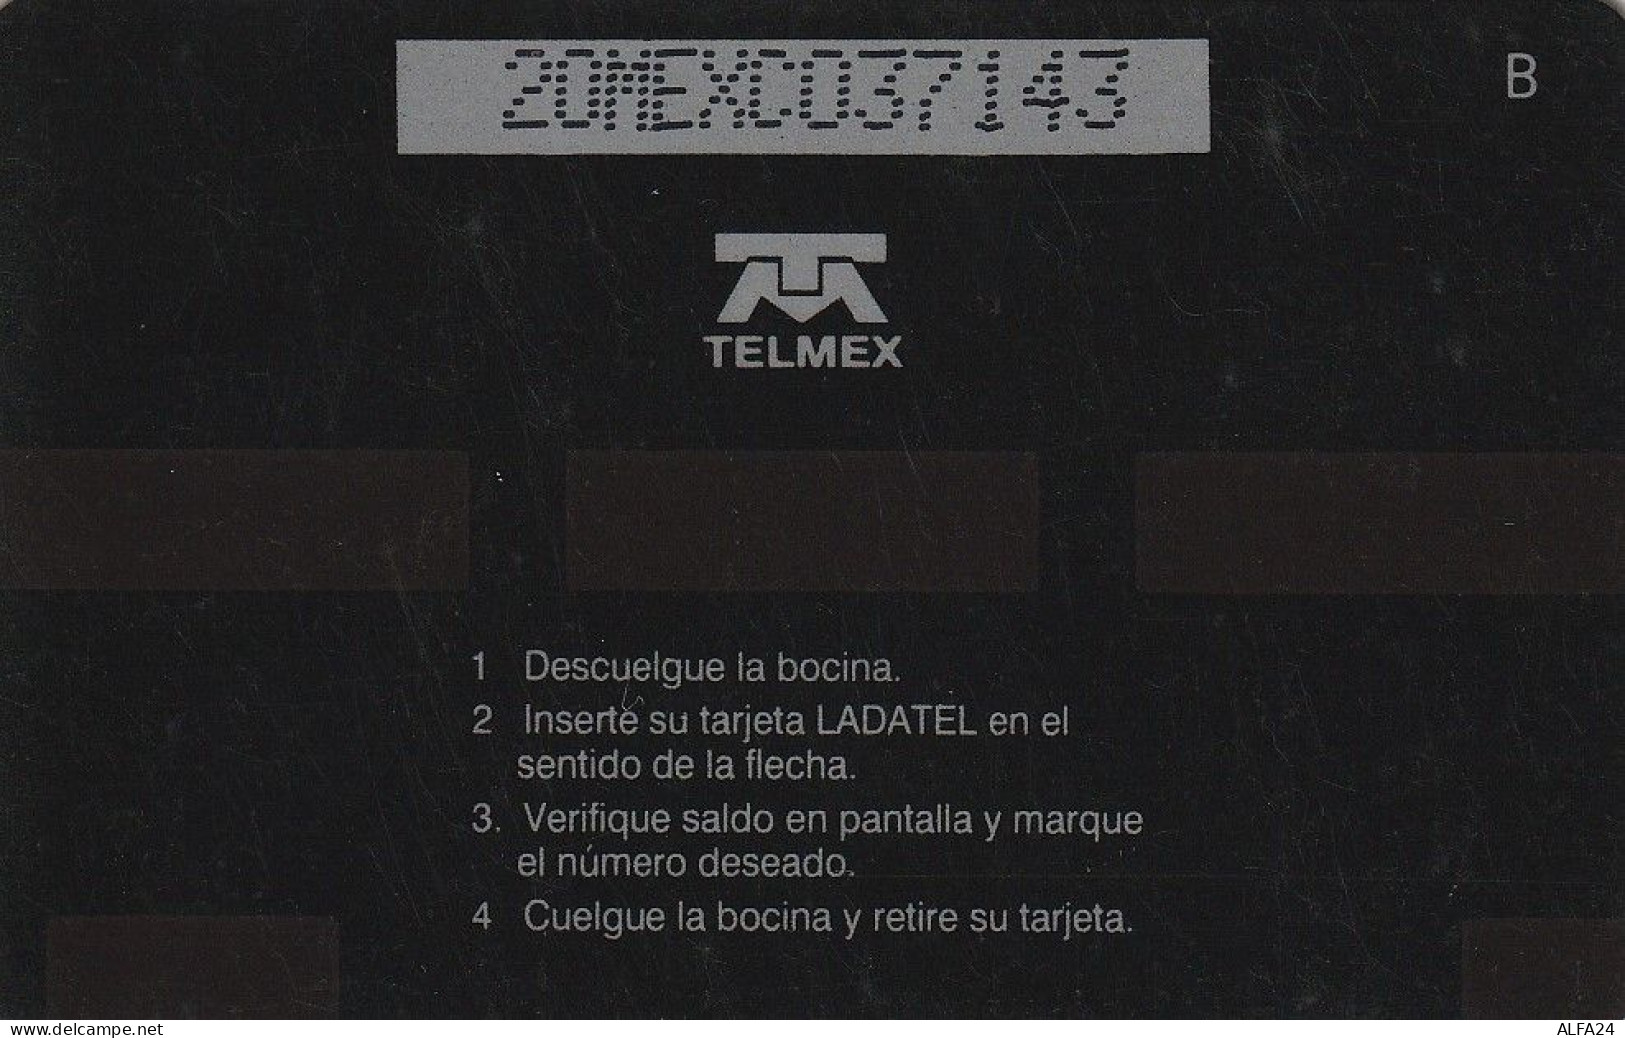 PHONE CARD MESSICO GPT (E67.27.2 - Mexico